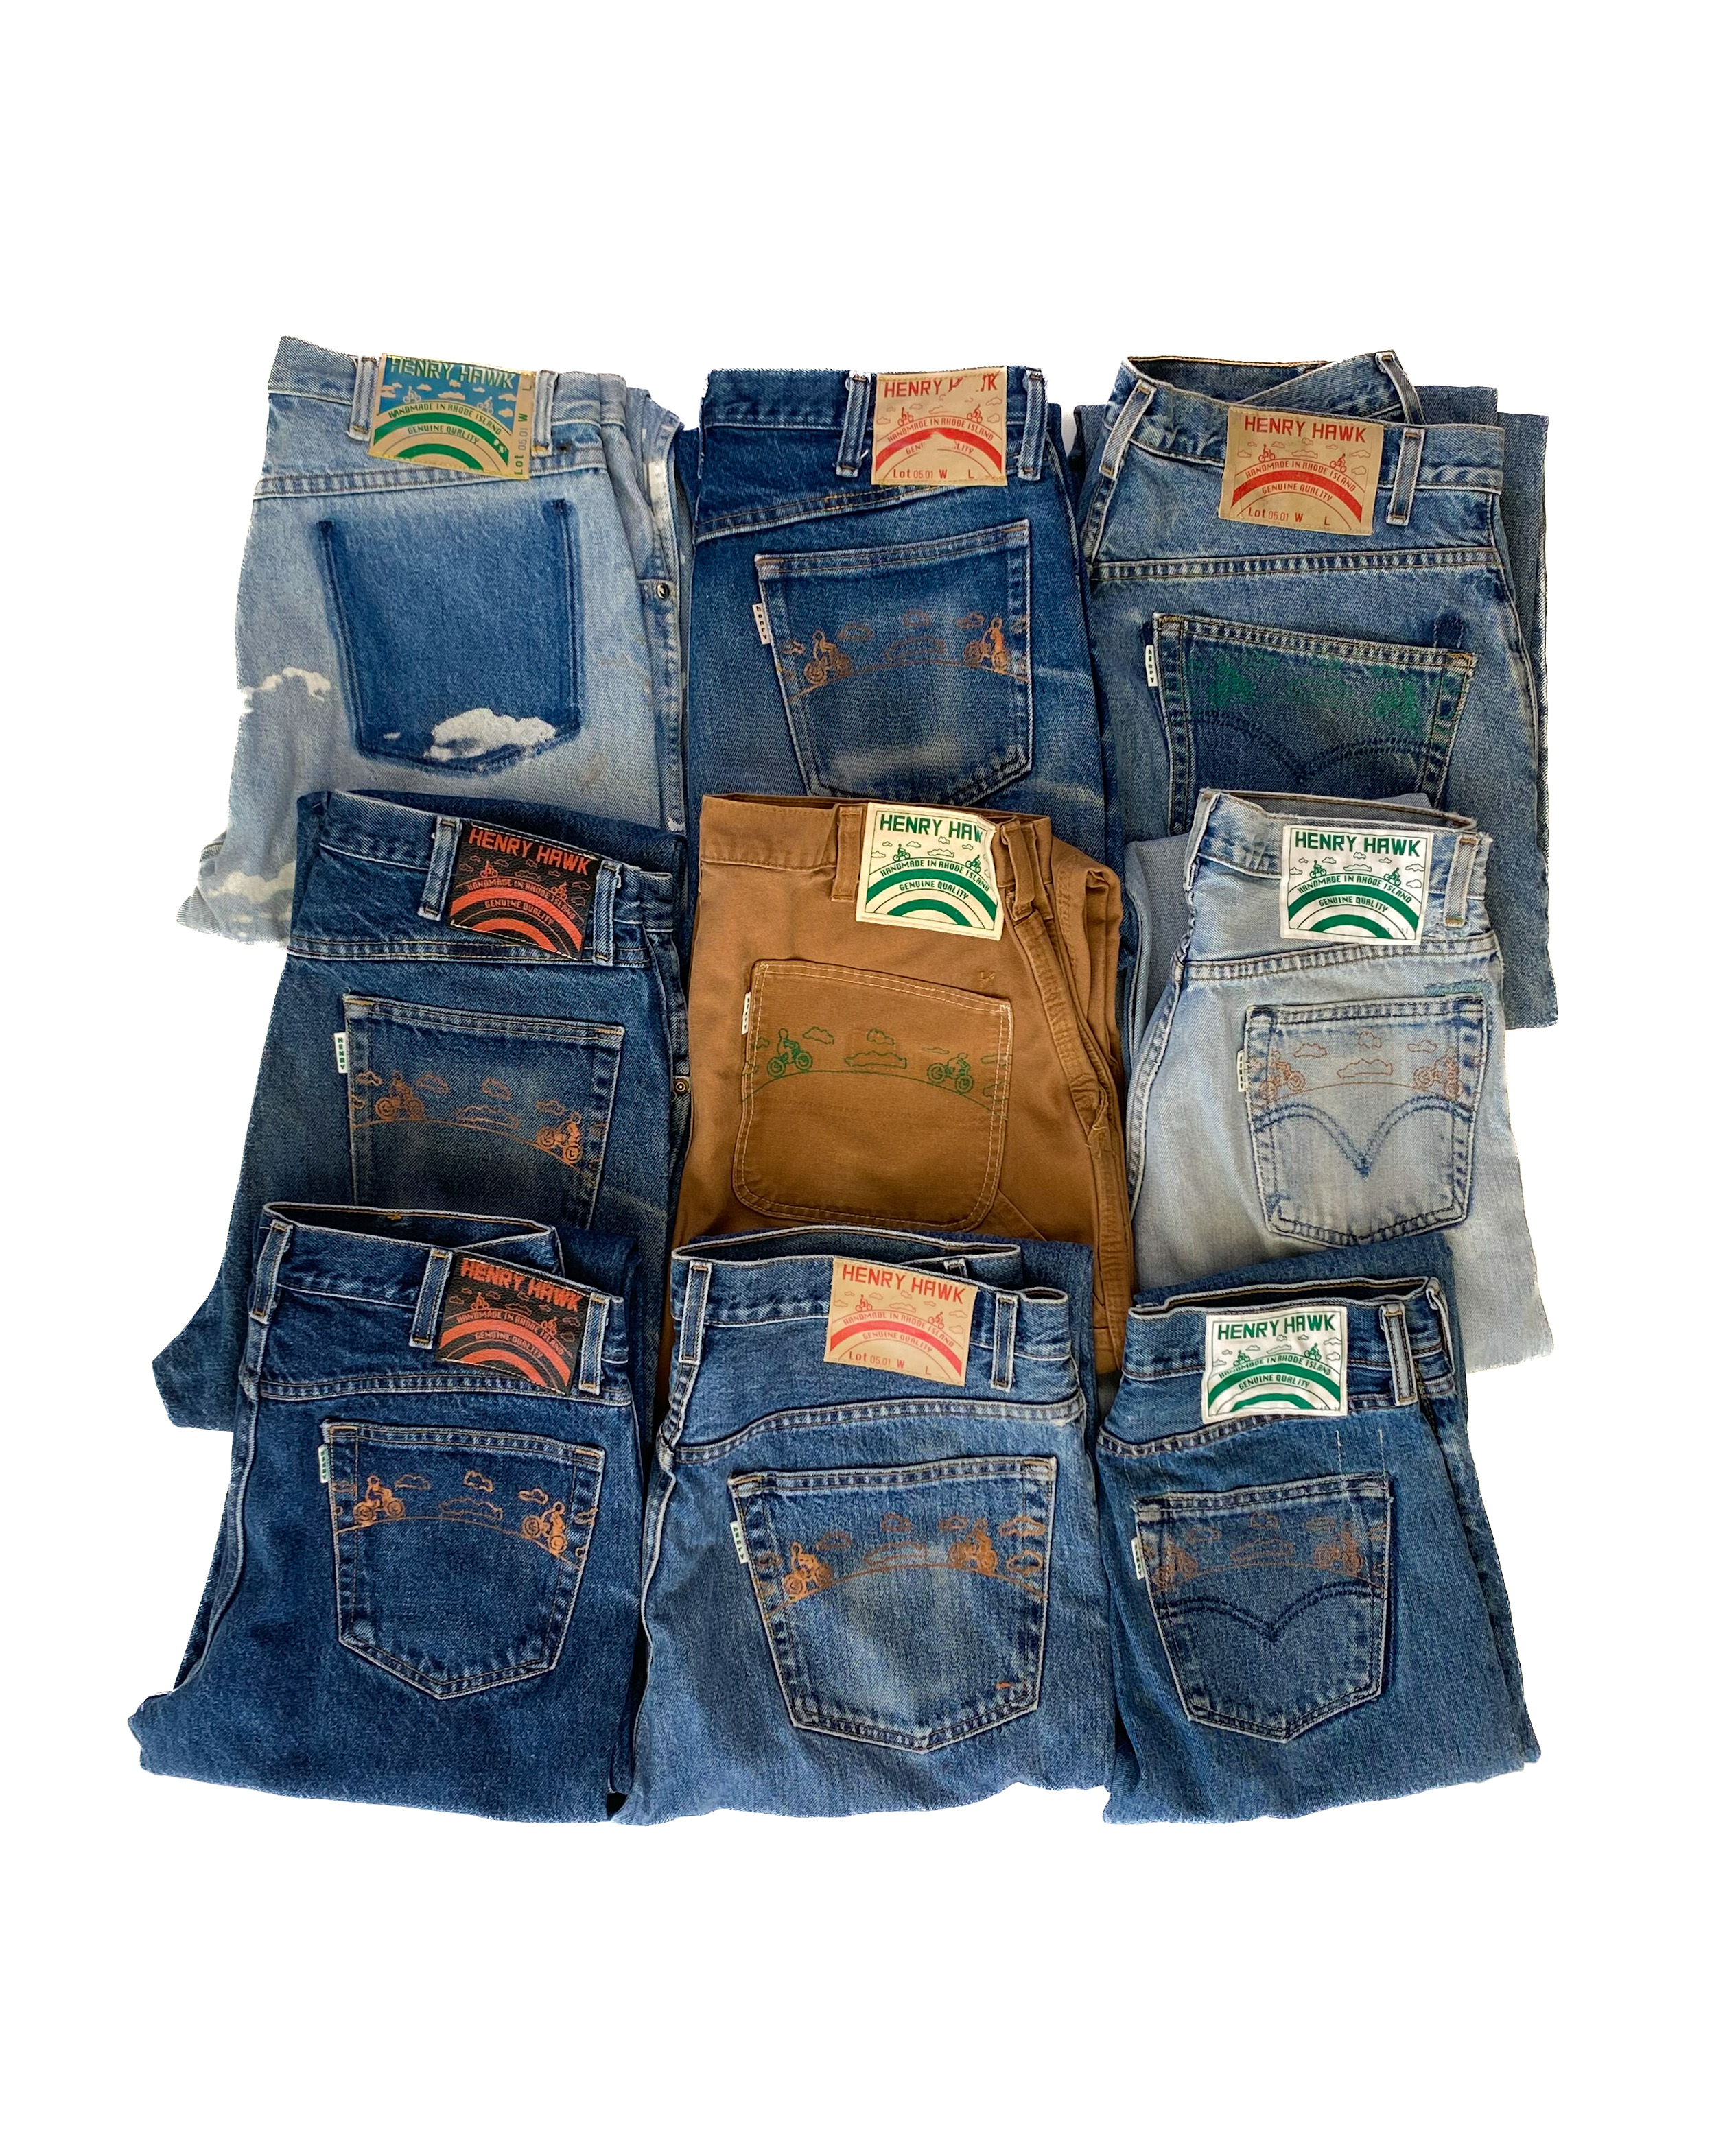 Refurbished jeans SHOP - Henry Hawk